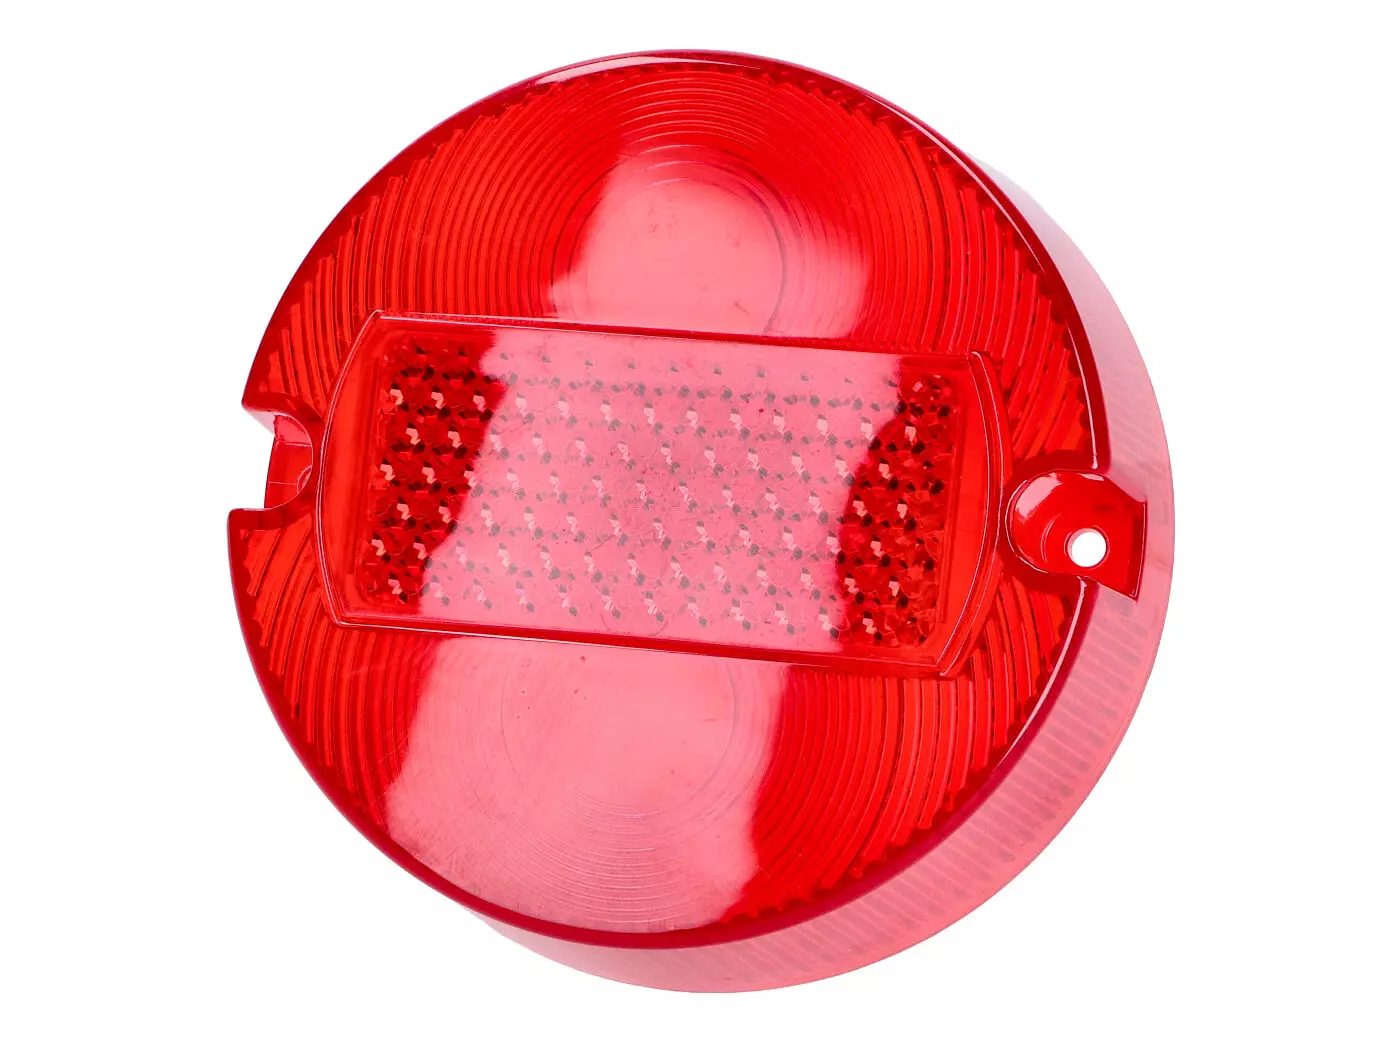 Rear Light Lens 100mm Red W/o E-mark For Simson S50, S51, S70, MZ